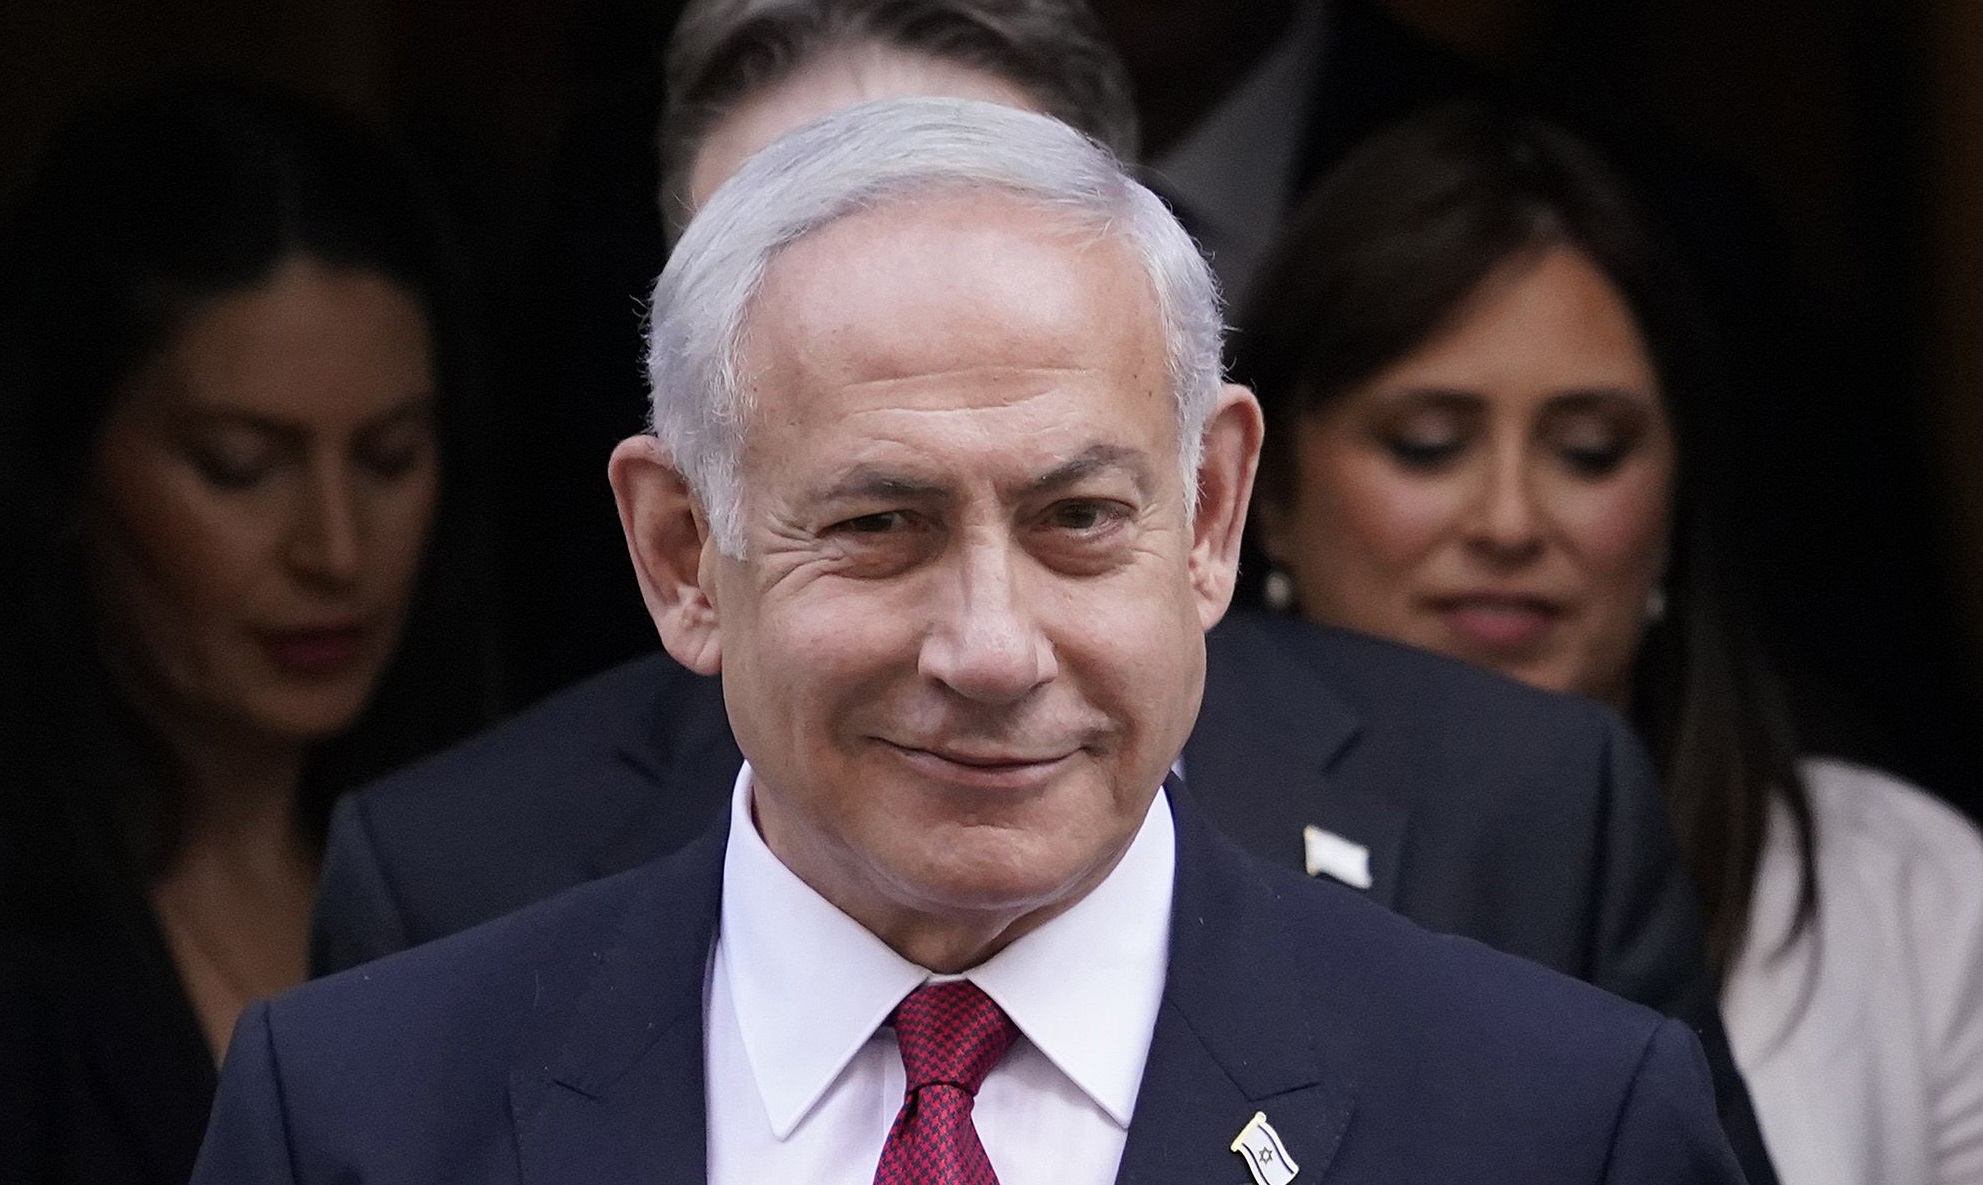 Netanyahu: "Askere gitmeyi reddetmek İsrail için çok büyük bir tehlikedir"